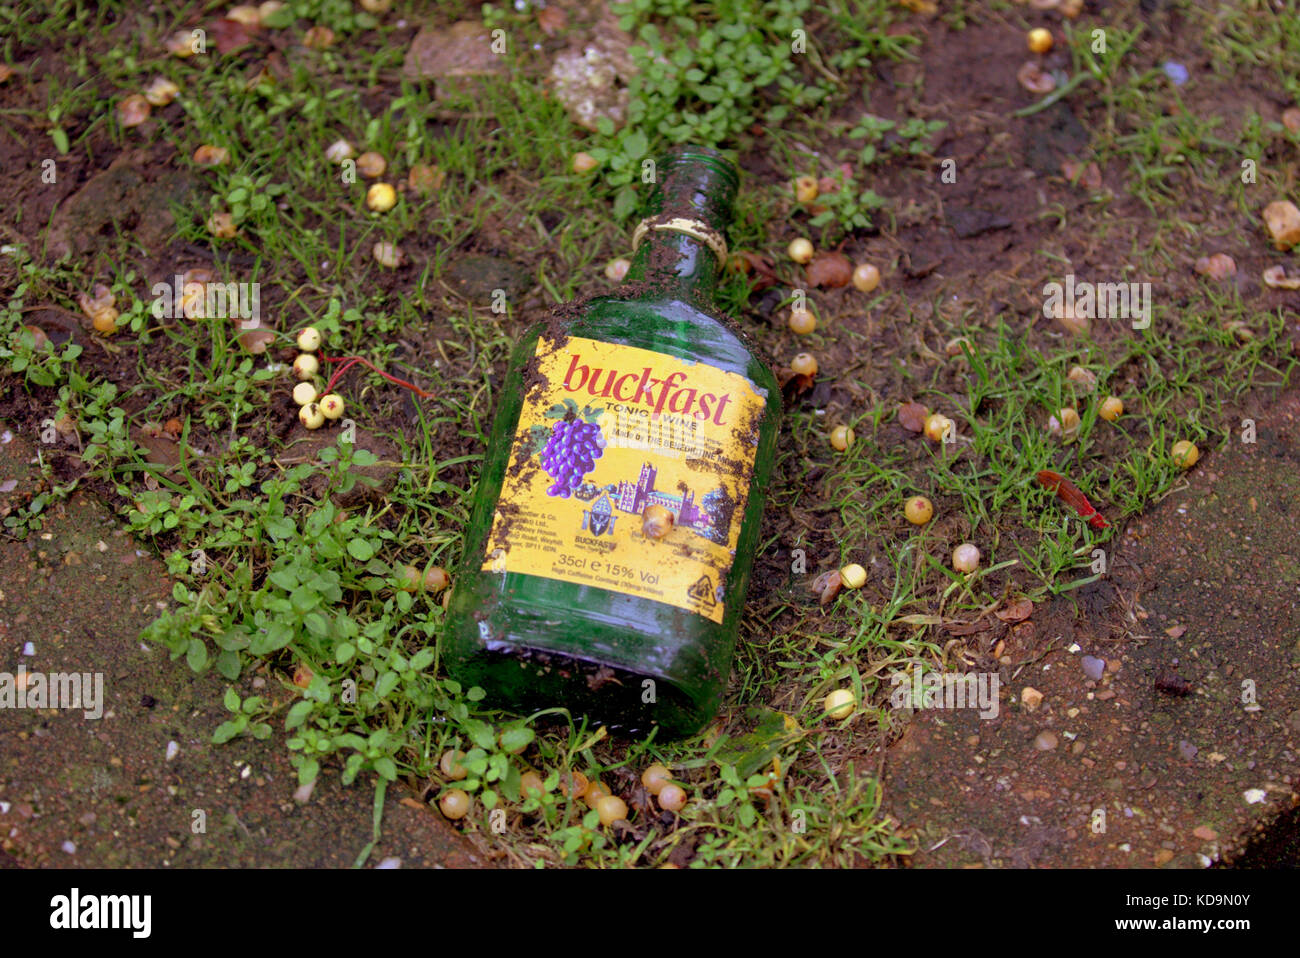 Buckfast jetés sur terre vase grass glasgow scottish problème d'alcool santé Glasgow Banque D'Images